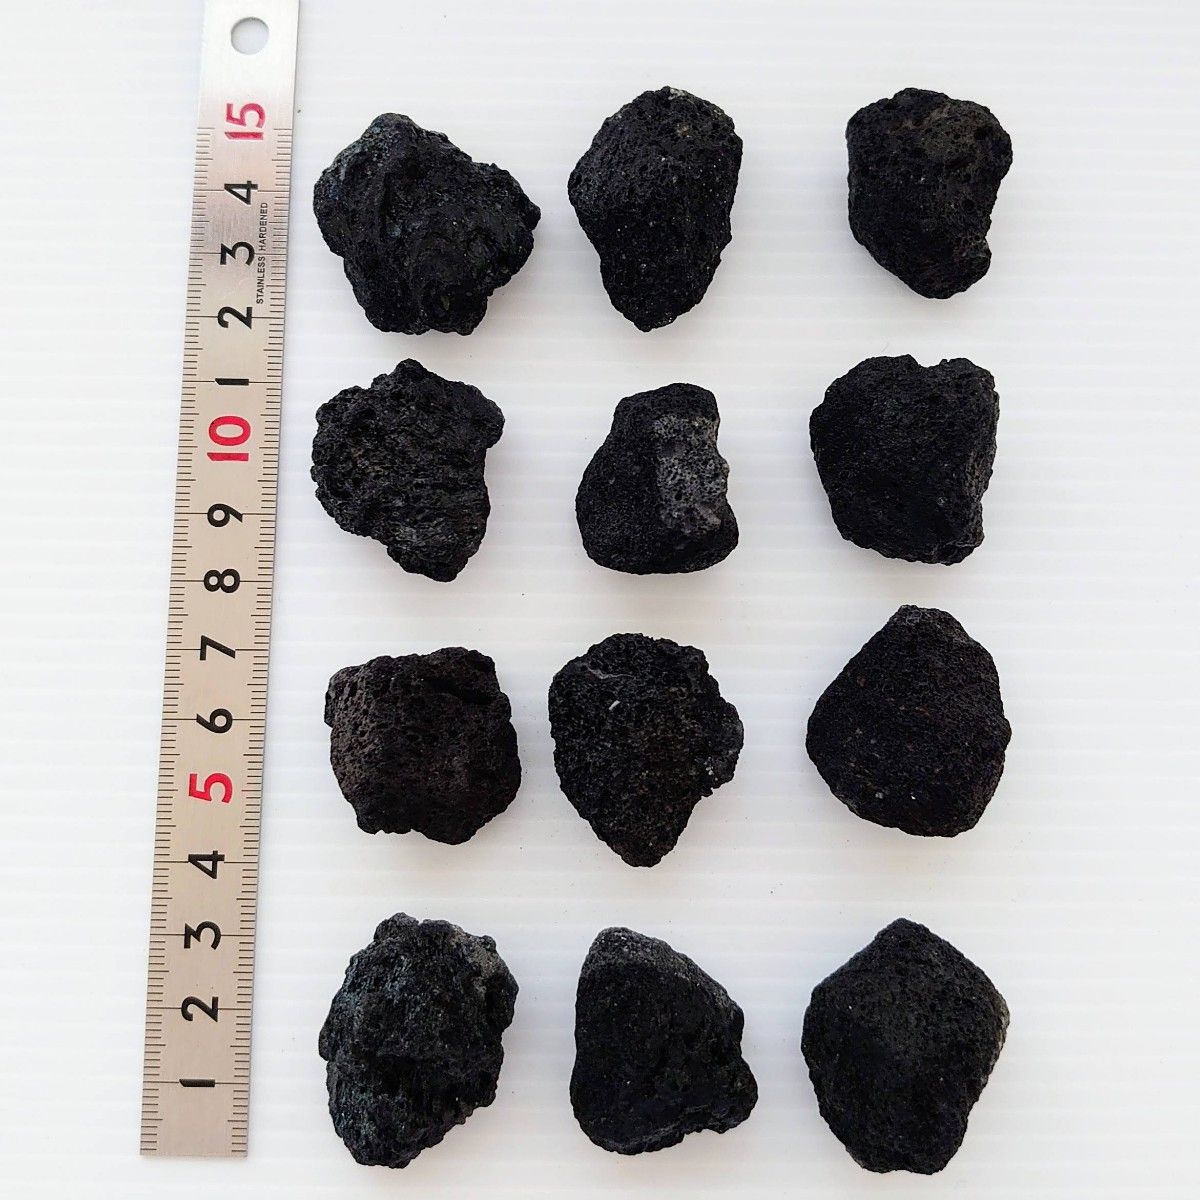 黒溶岩石 23個 【超3大10中10】☆アクアリウム、テラリウム、苔リウムに最適